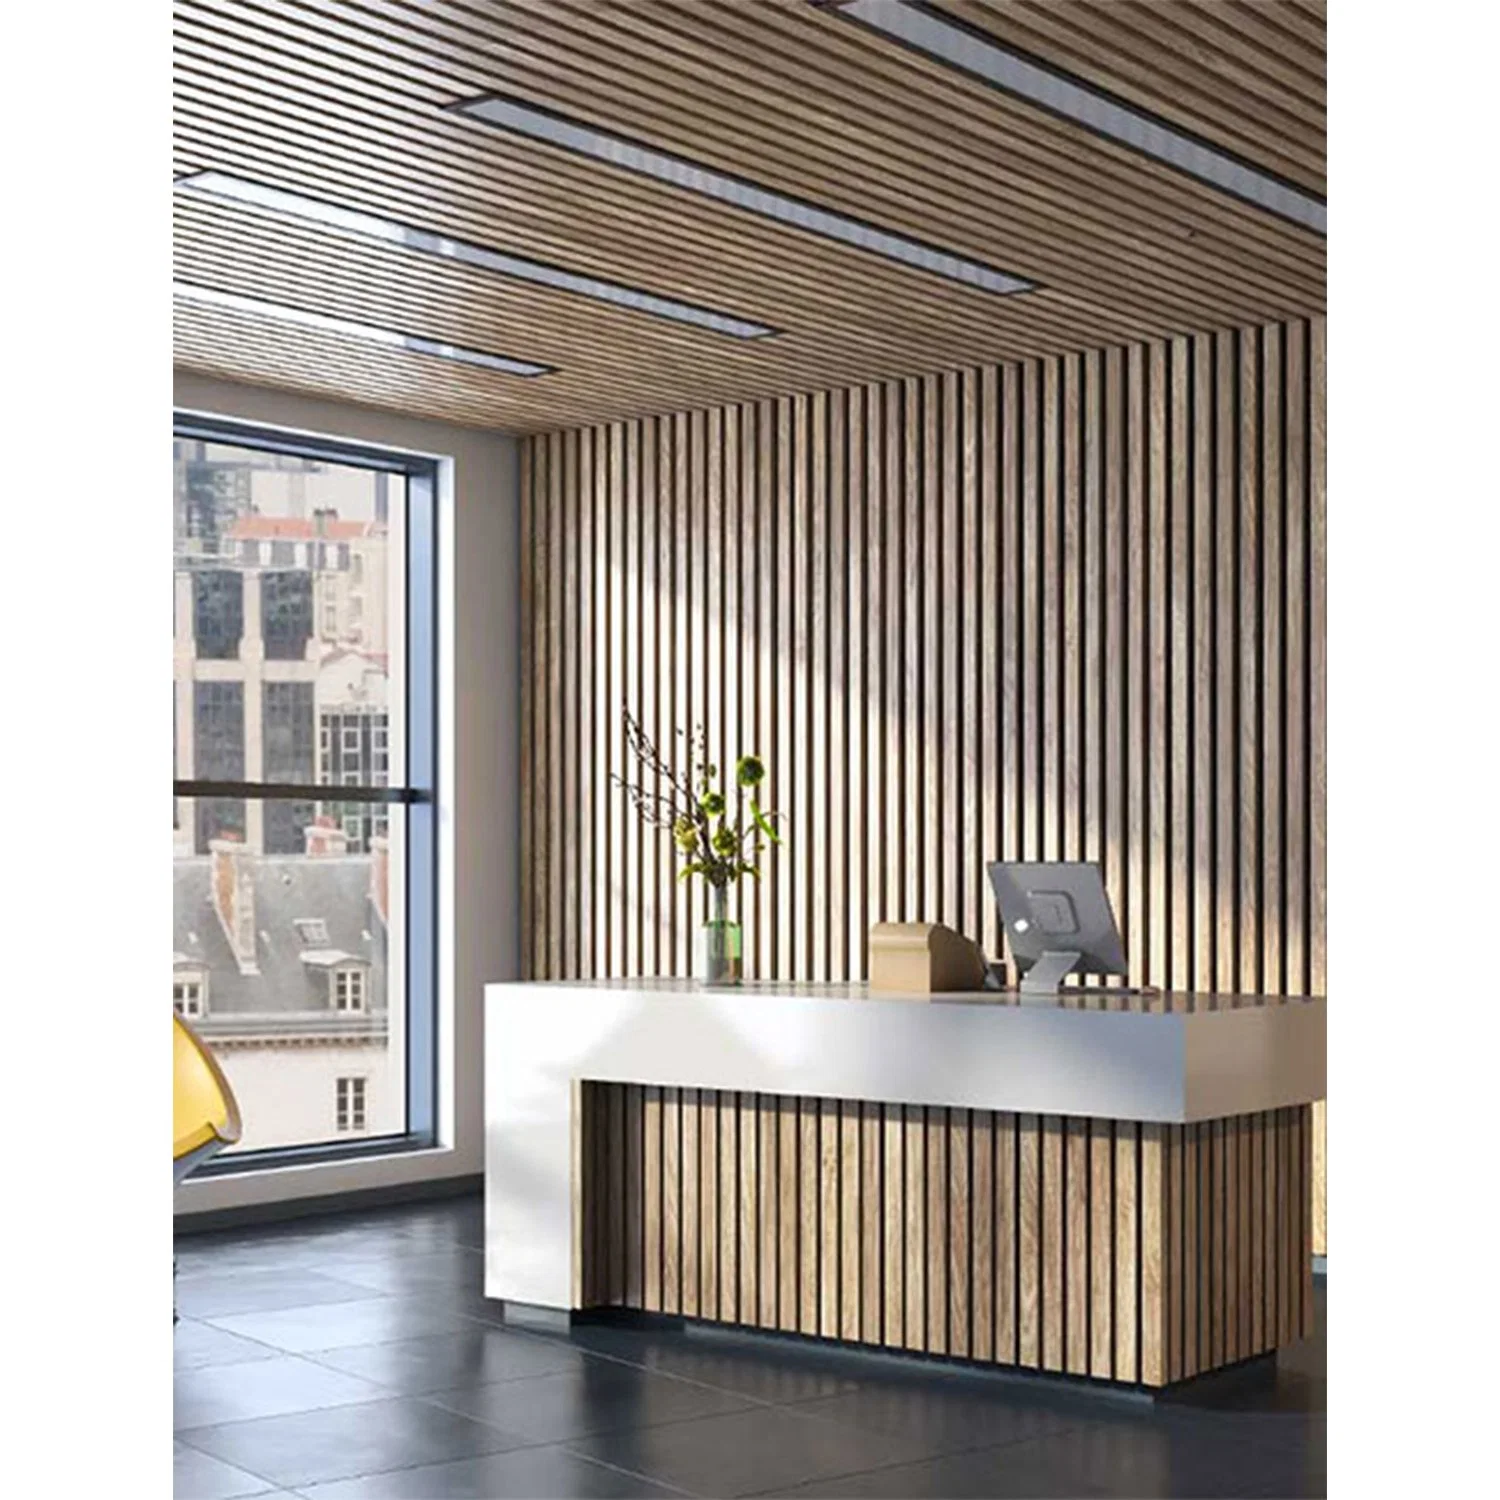 La decoración de interiores material compacto de MDF y listones de madera con fibra de poliéster panel acústico como edificio de oficinas